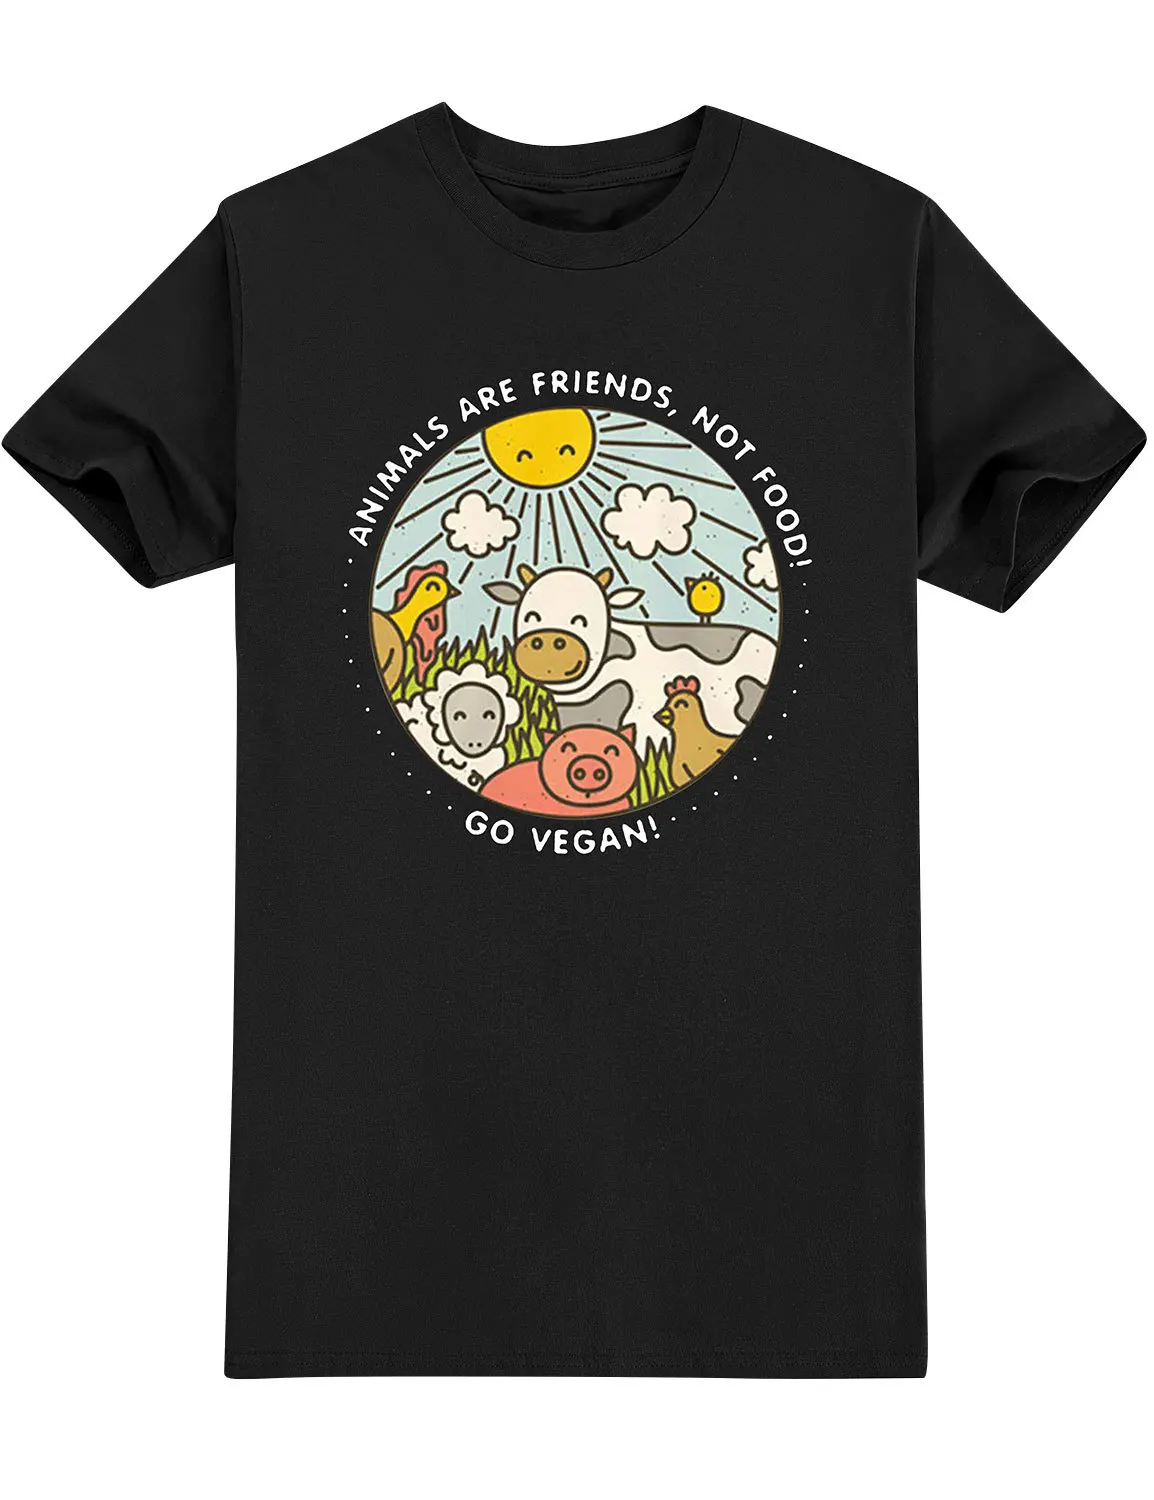 

Мужская/Женская модная футболка Wearepinky, Забавные футболки в стиле High Street 90-х с круглым вырезом, буквами, аппликациями и надписью «Animal ARE FRIENDS»